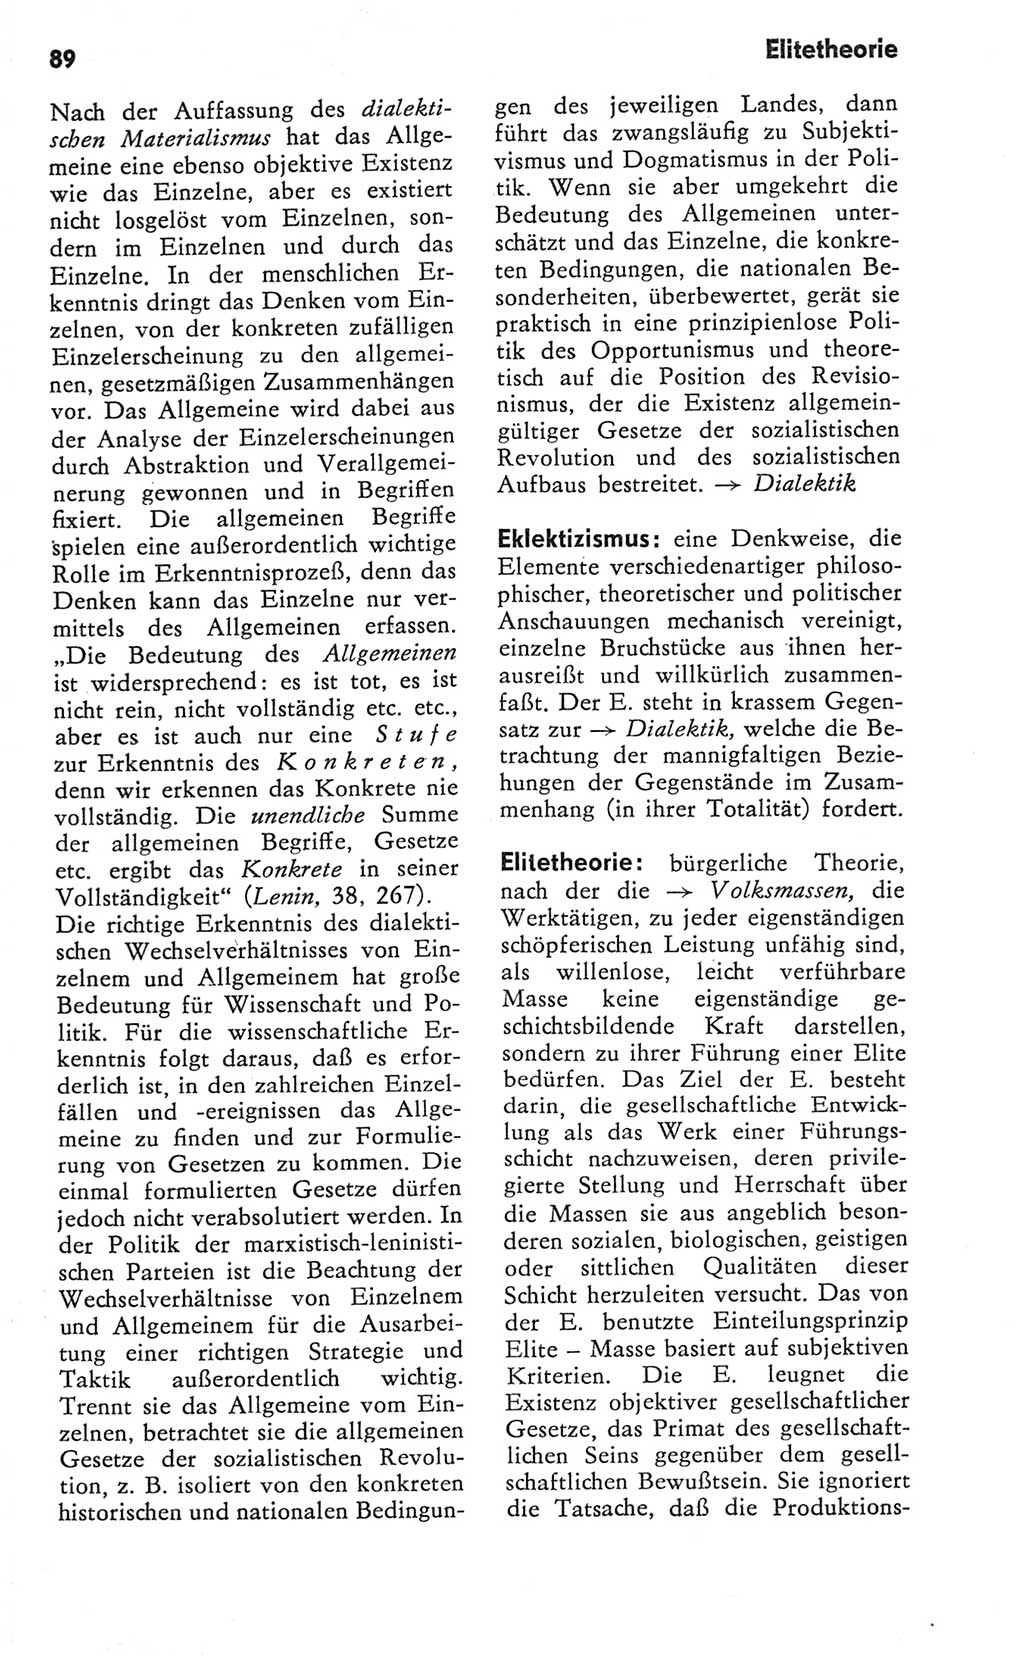 Kleines Wörterbuch der marxistisch-leninistischen Philosophie [Deutsche Demokratische Republik (DDR)] 1981, Seite 89 (Kl. Wb. ML Phil. DDR 1981, S. 89)